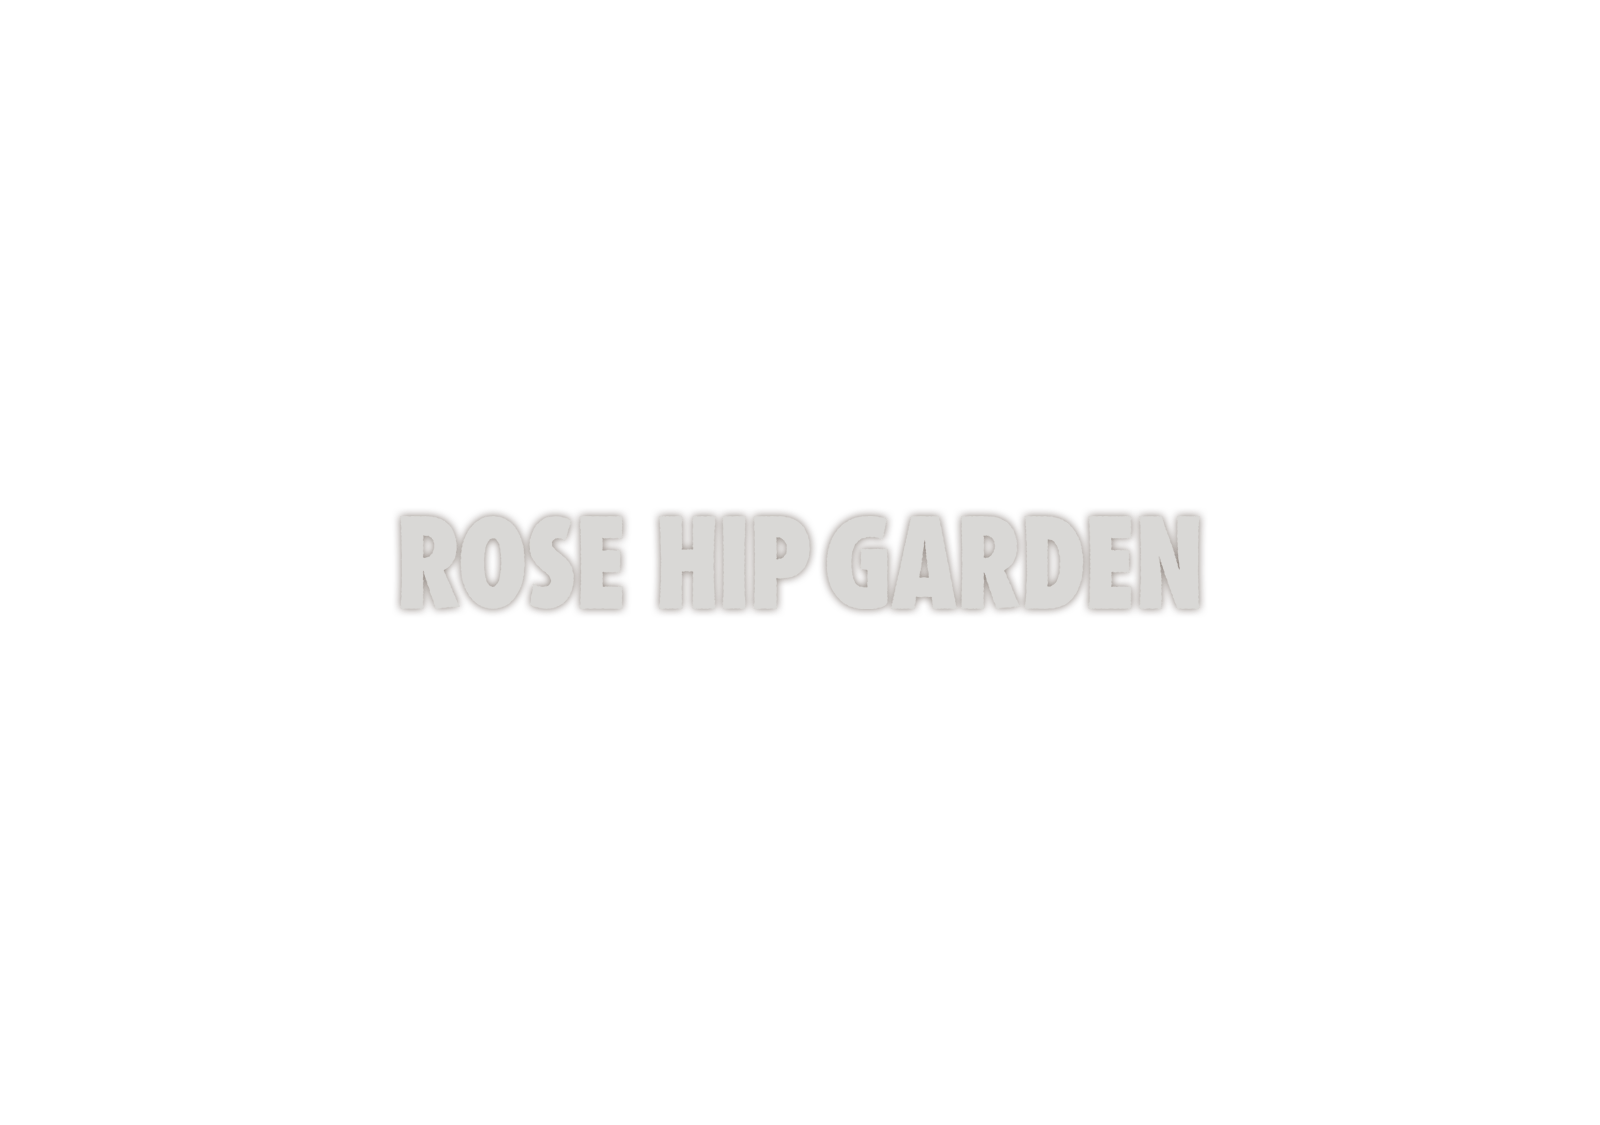 ROSE HIP GARDEN　ロゴイメージ